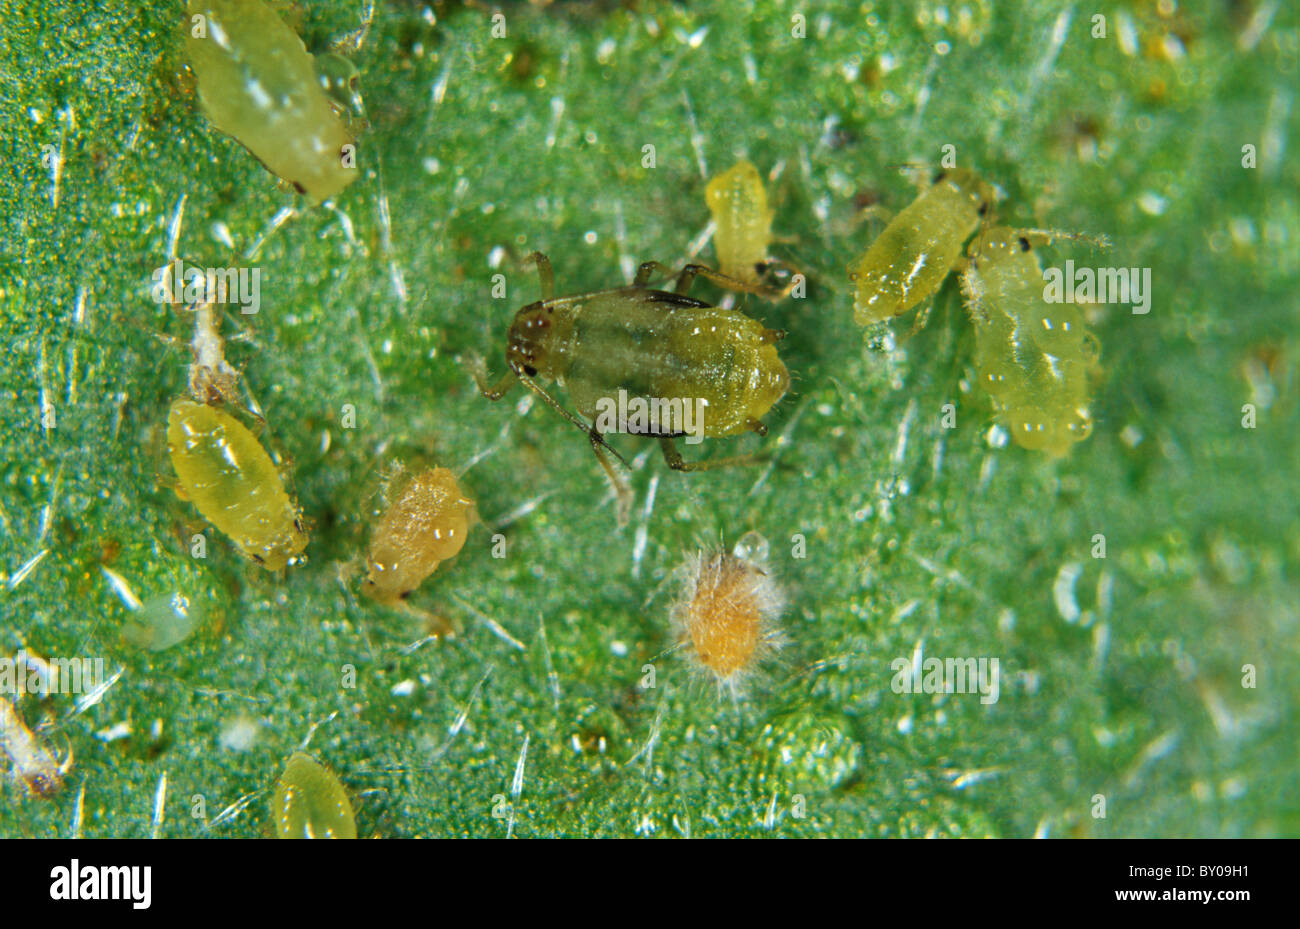 Frühe Entwicklung der enthopathogenische Pilz Verticillium Lecanii auf Blattlaus Host Schädlinge Stockfoto